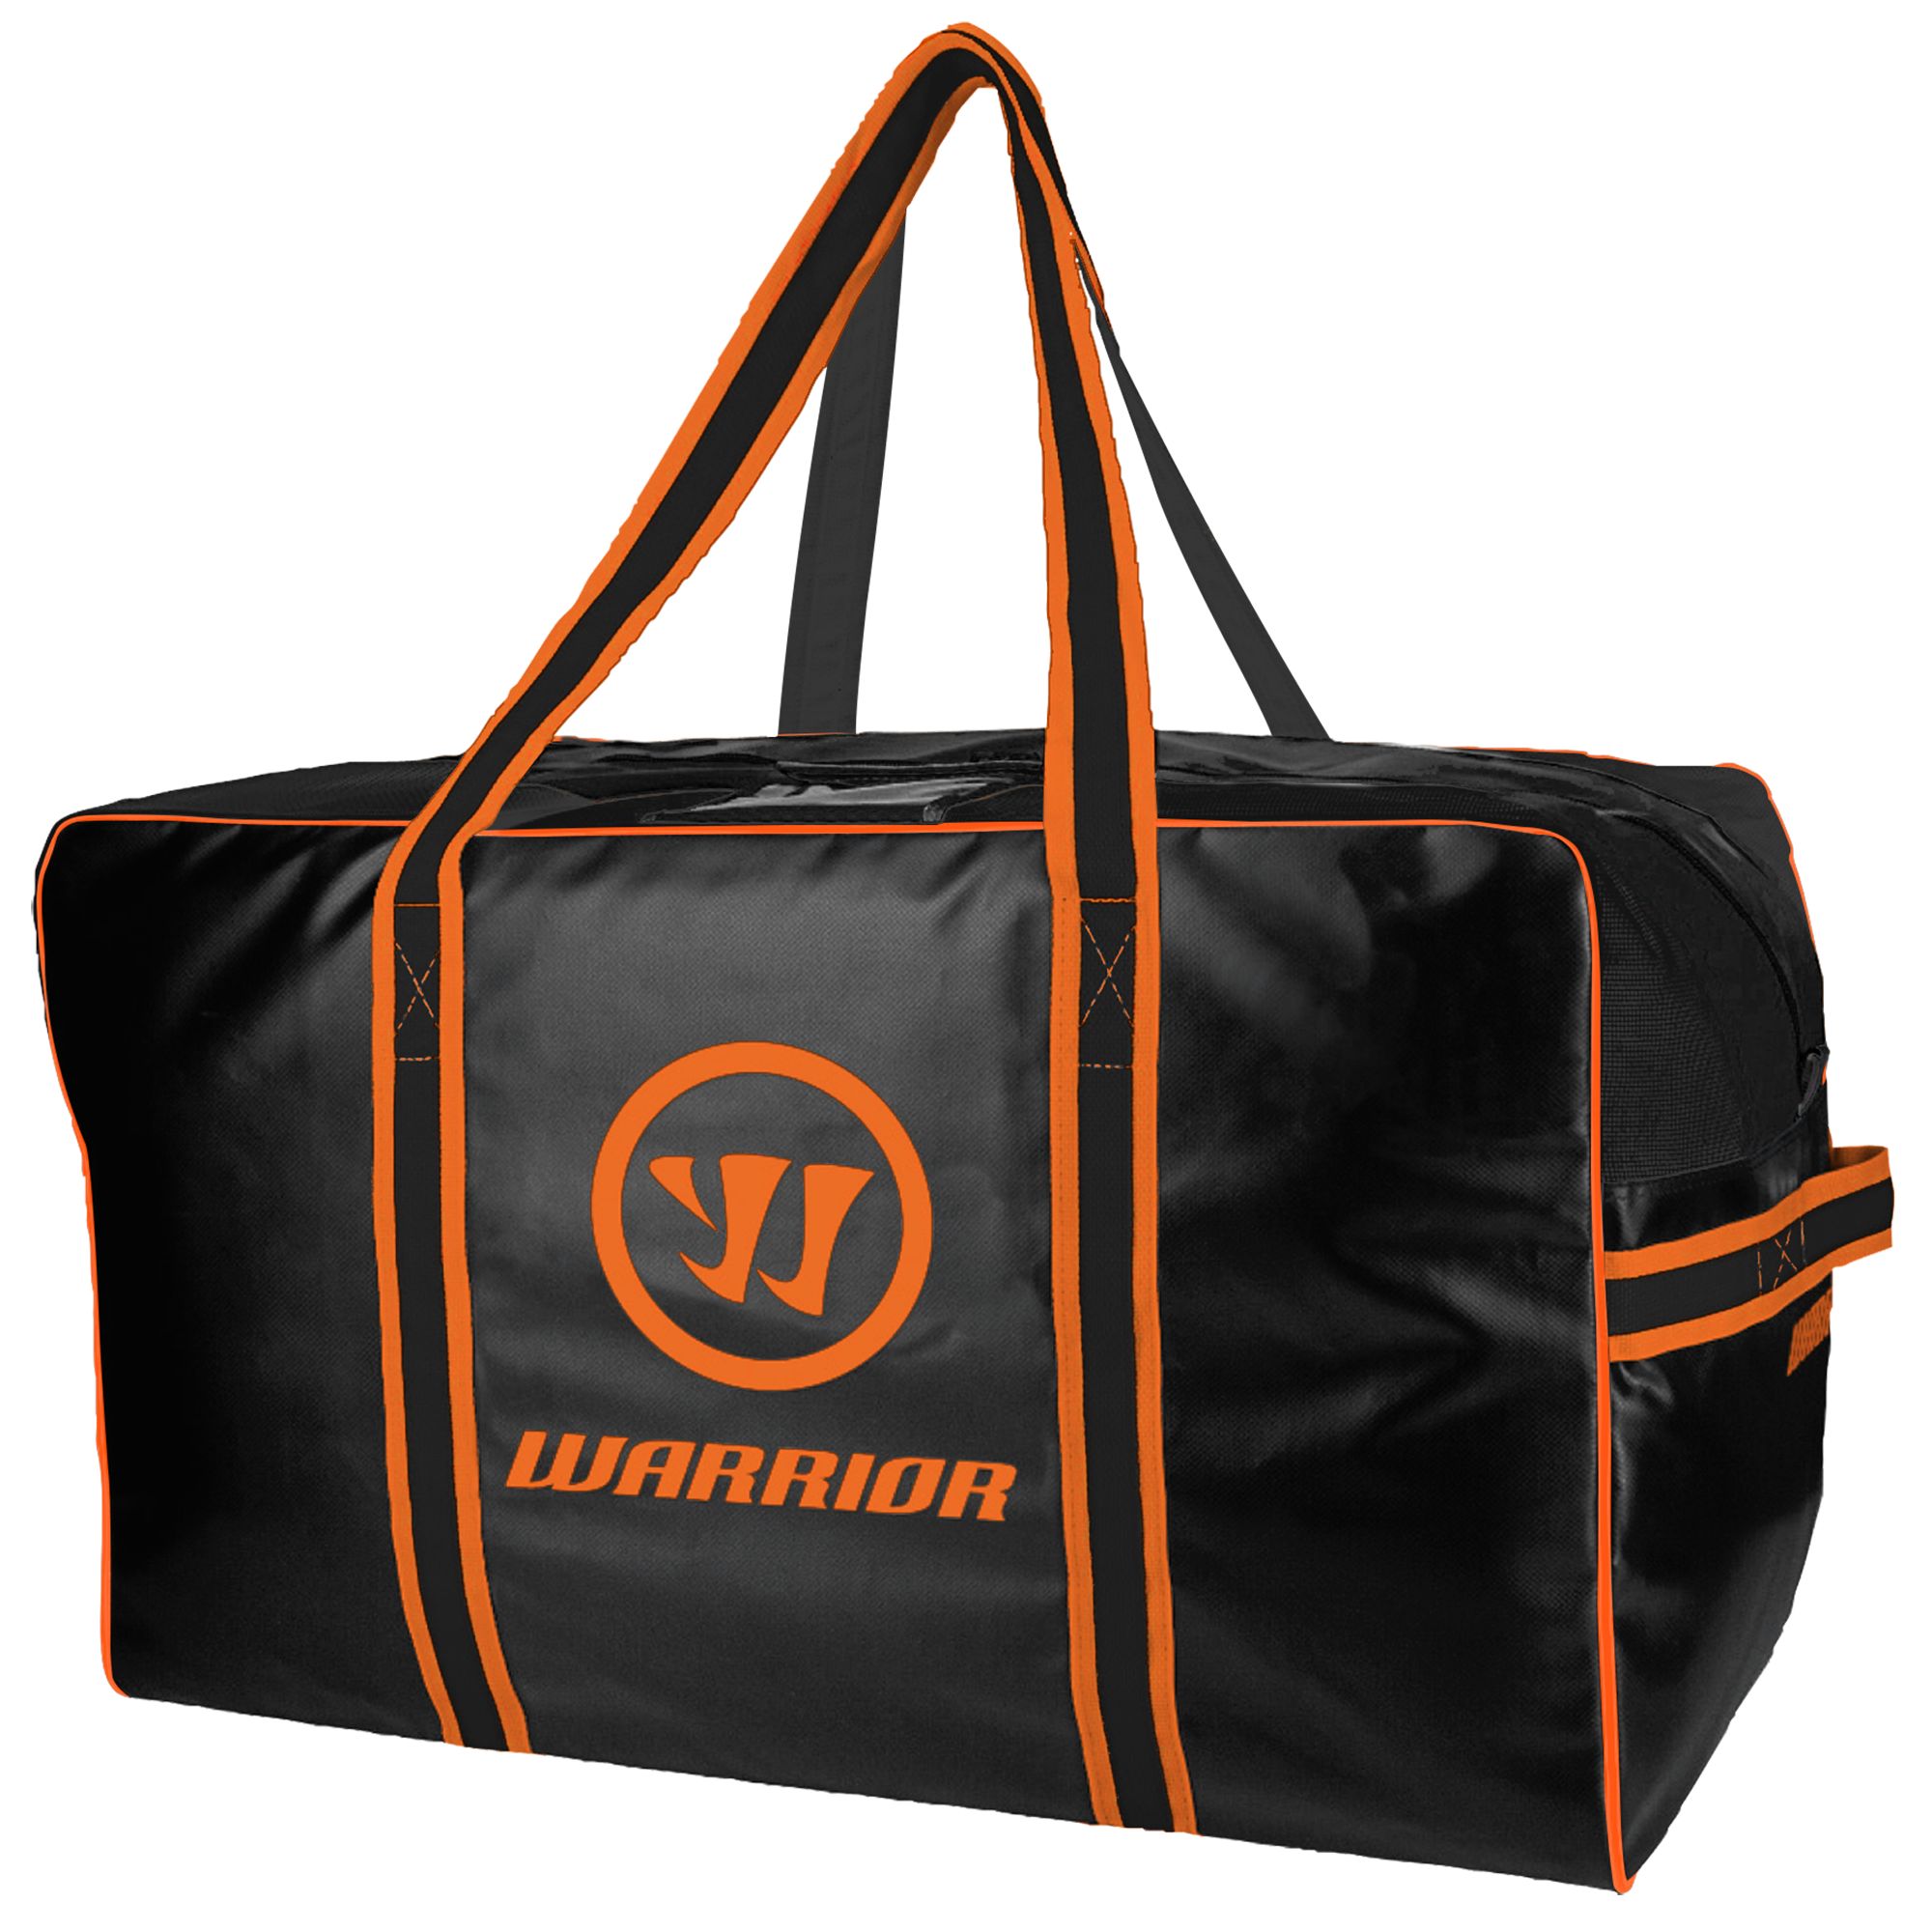 Warrior Pro Bag, Black with Orange image number 1